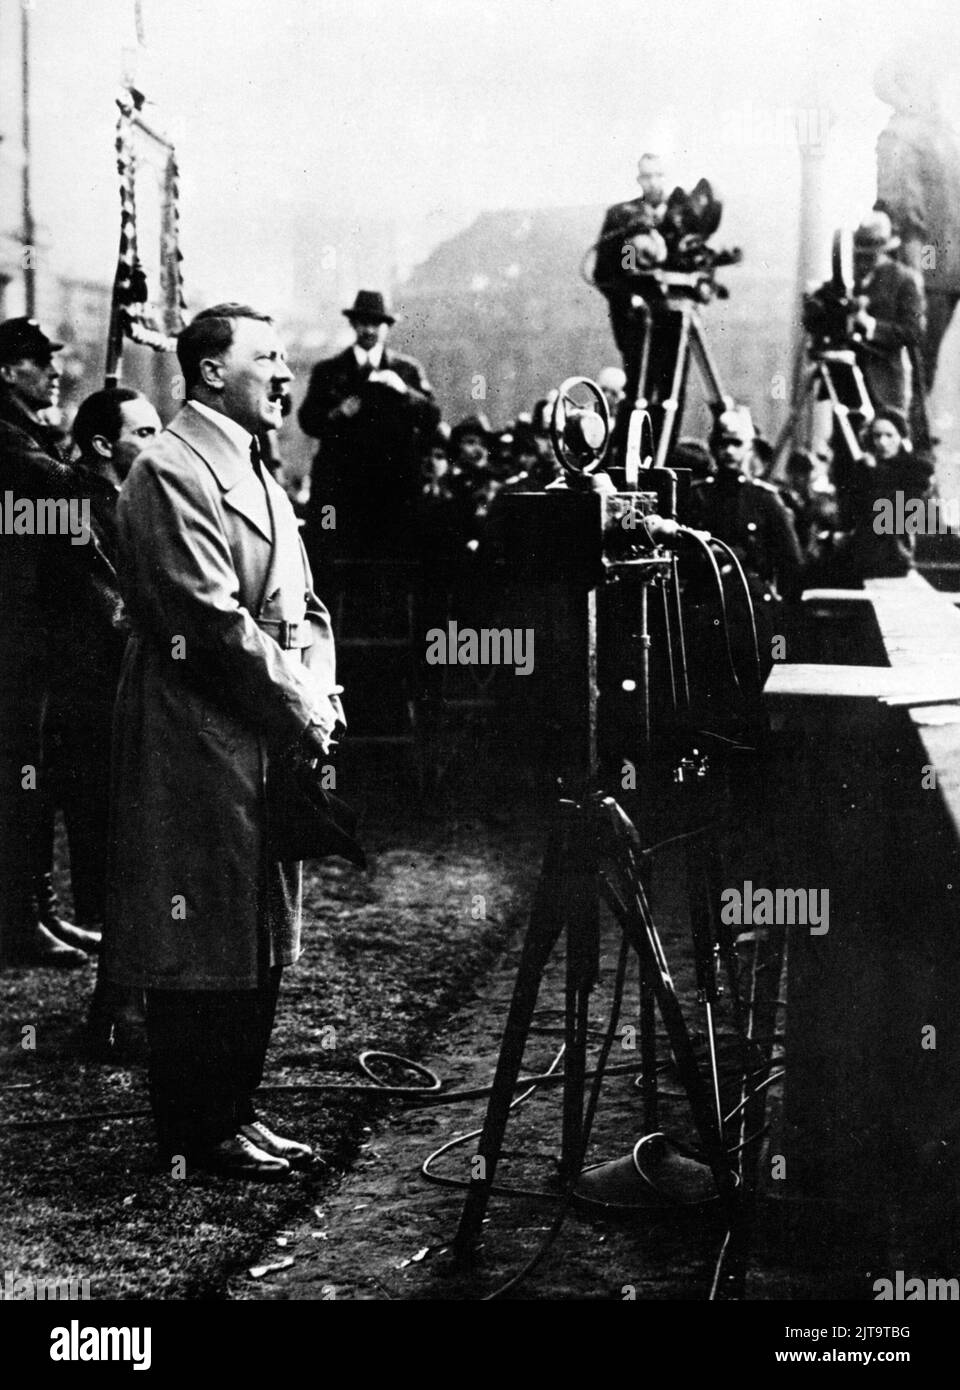 Une photo d'époque vers 1933 montrant le dictateur nazi allemand Adolf Hitler s'adressant à la foule lors d'un rallye électoral Banque D'Images